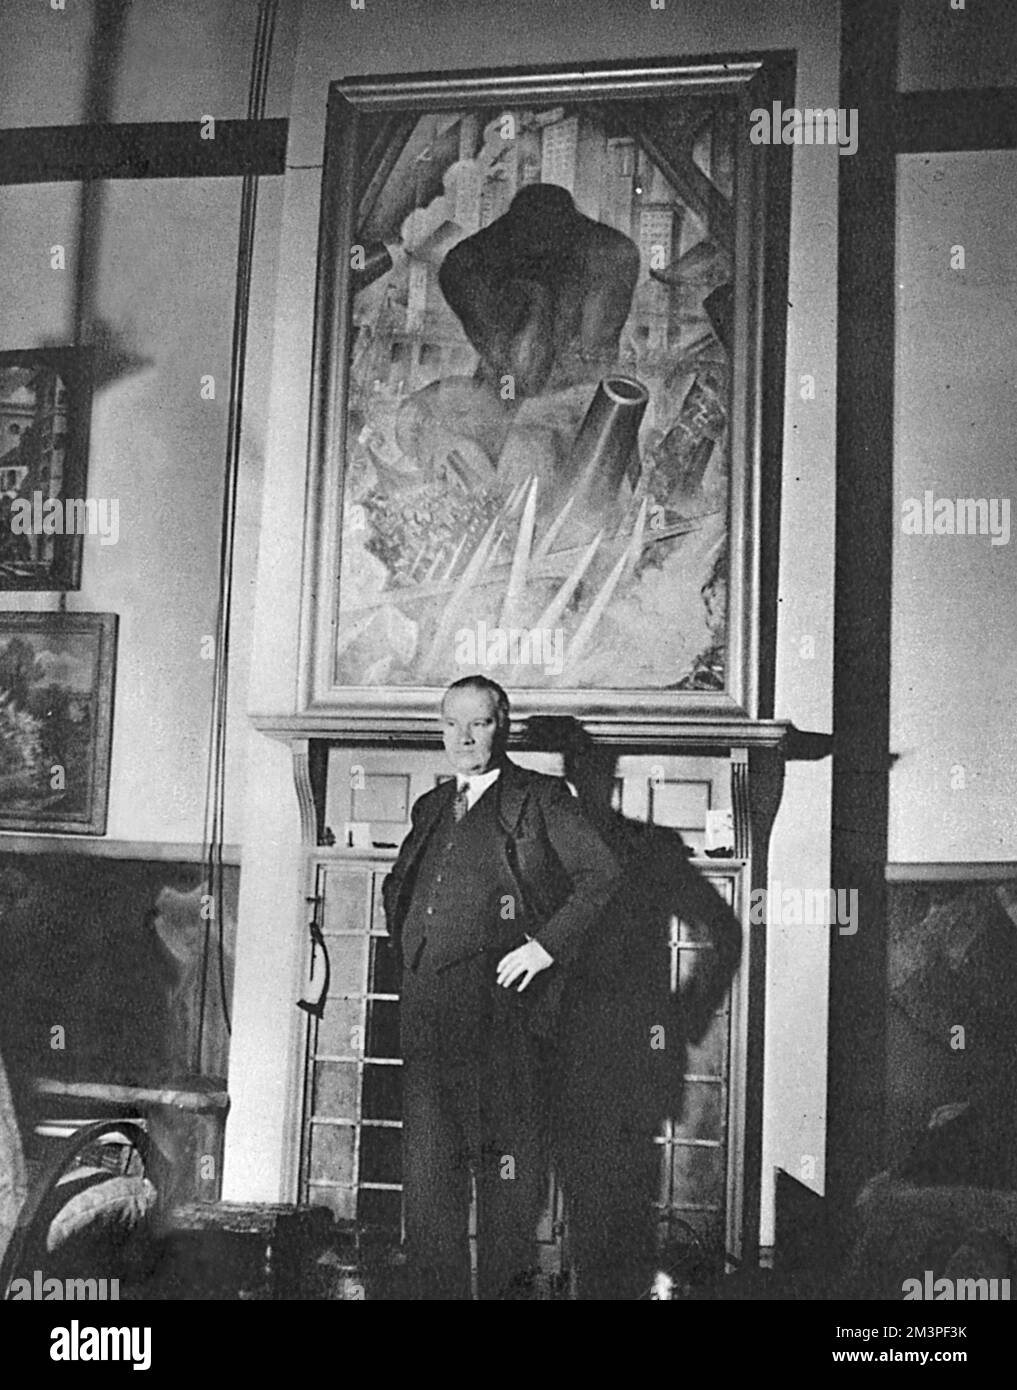 Christopher Richard Wynne Nevinson (1889 - 1946), artiste anglais, debout devant l'une de ses œuvres, intitulée 'homme du XXe siècle'. Nevinson était l'un des plus célèbres artistes de guerre pendant la première Guerre mondiale. Date: 1939 Banque D'Images